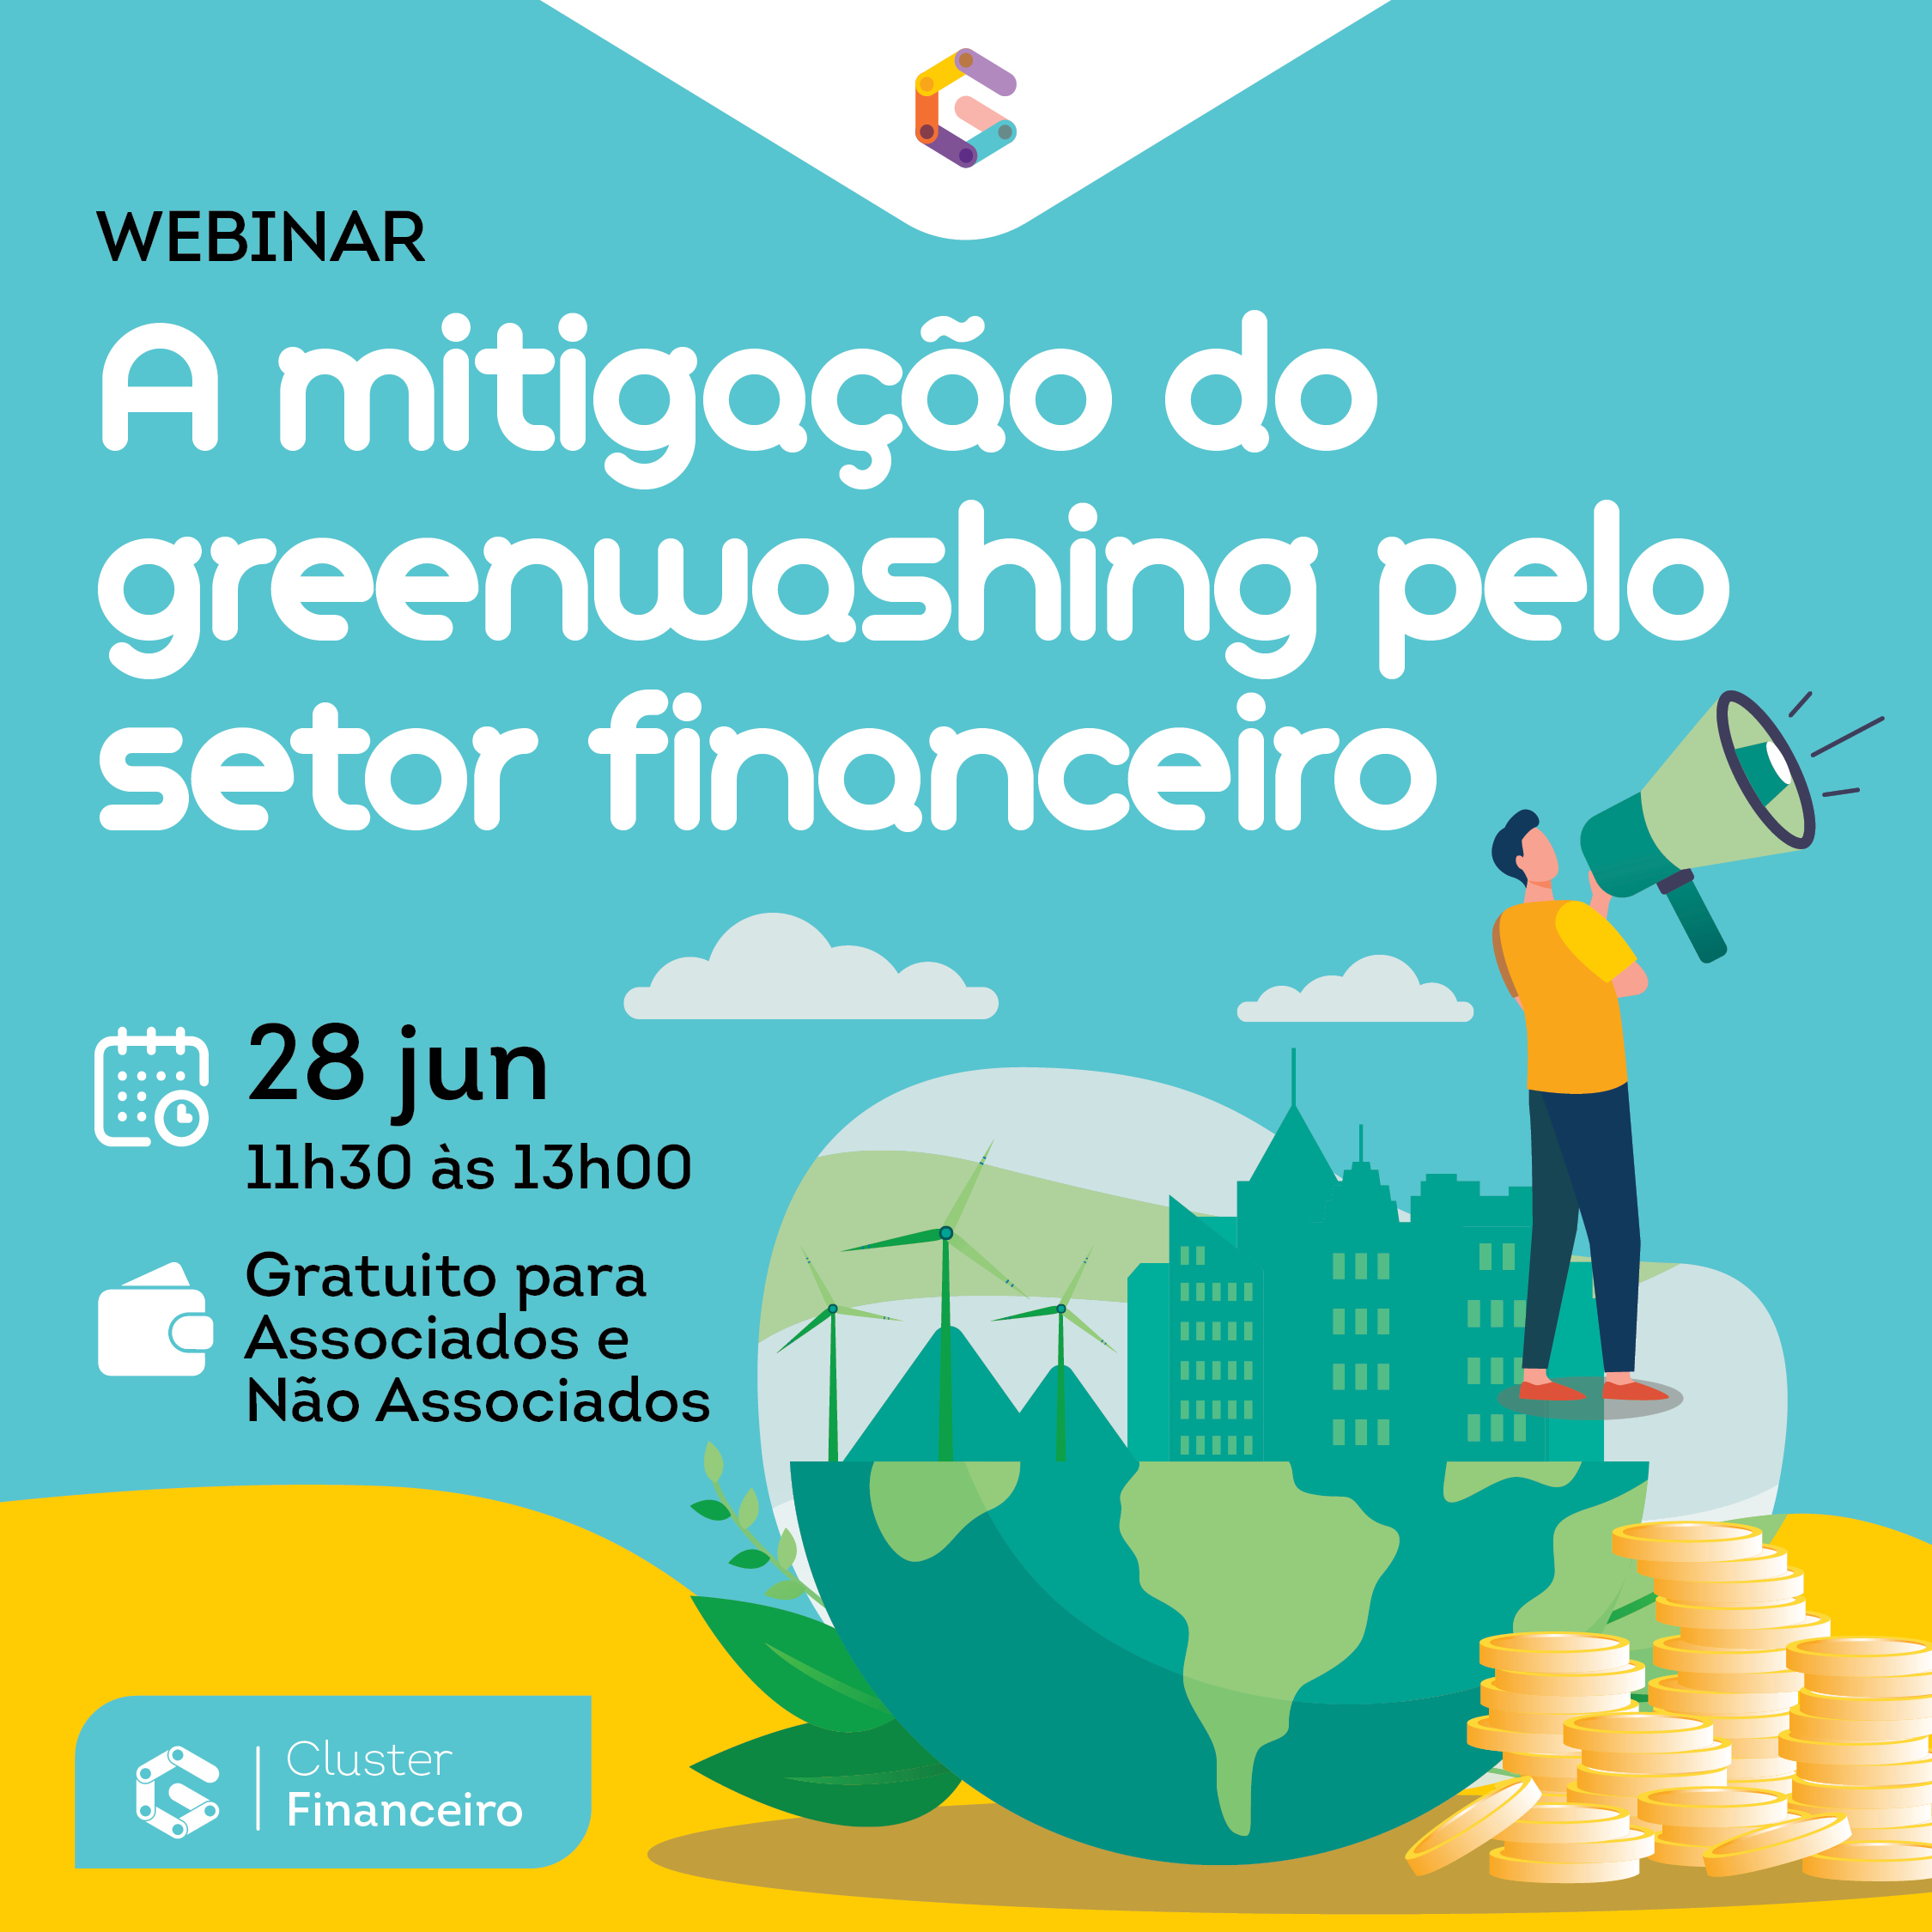 Webinar A MITIGAÇÃO DO GREENWASHING PELO SETOR FINANCEIRO